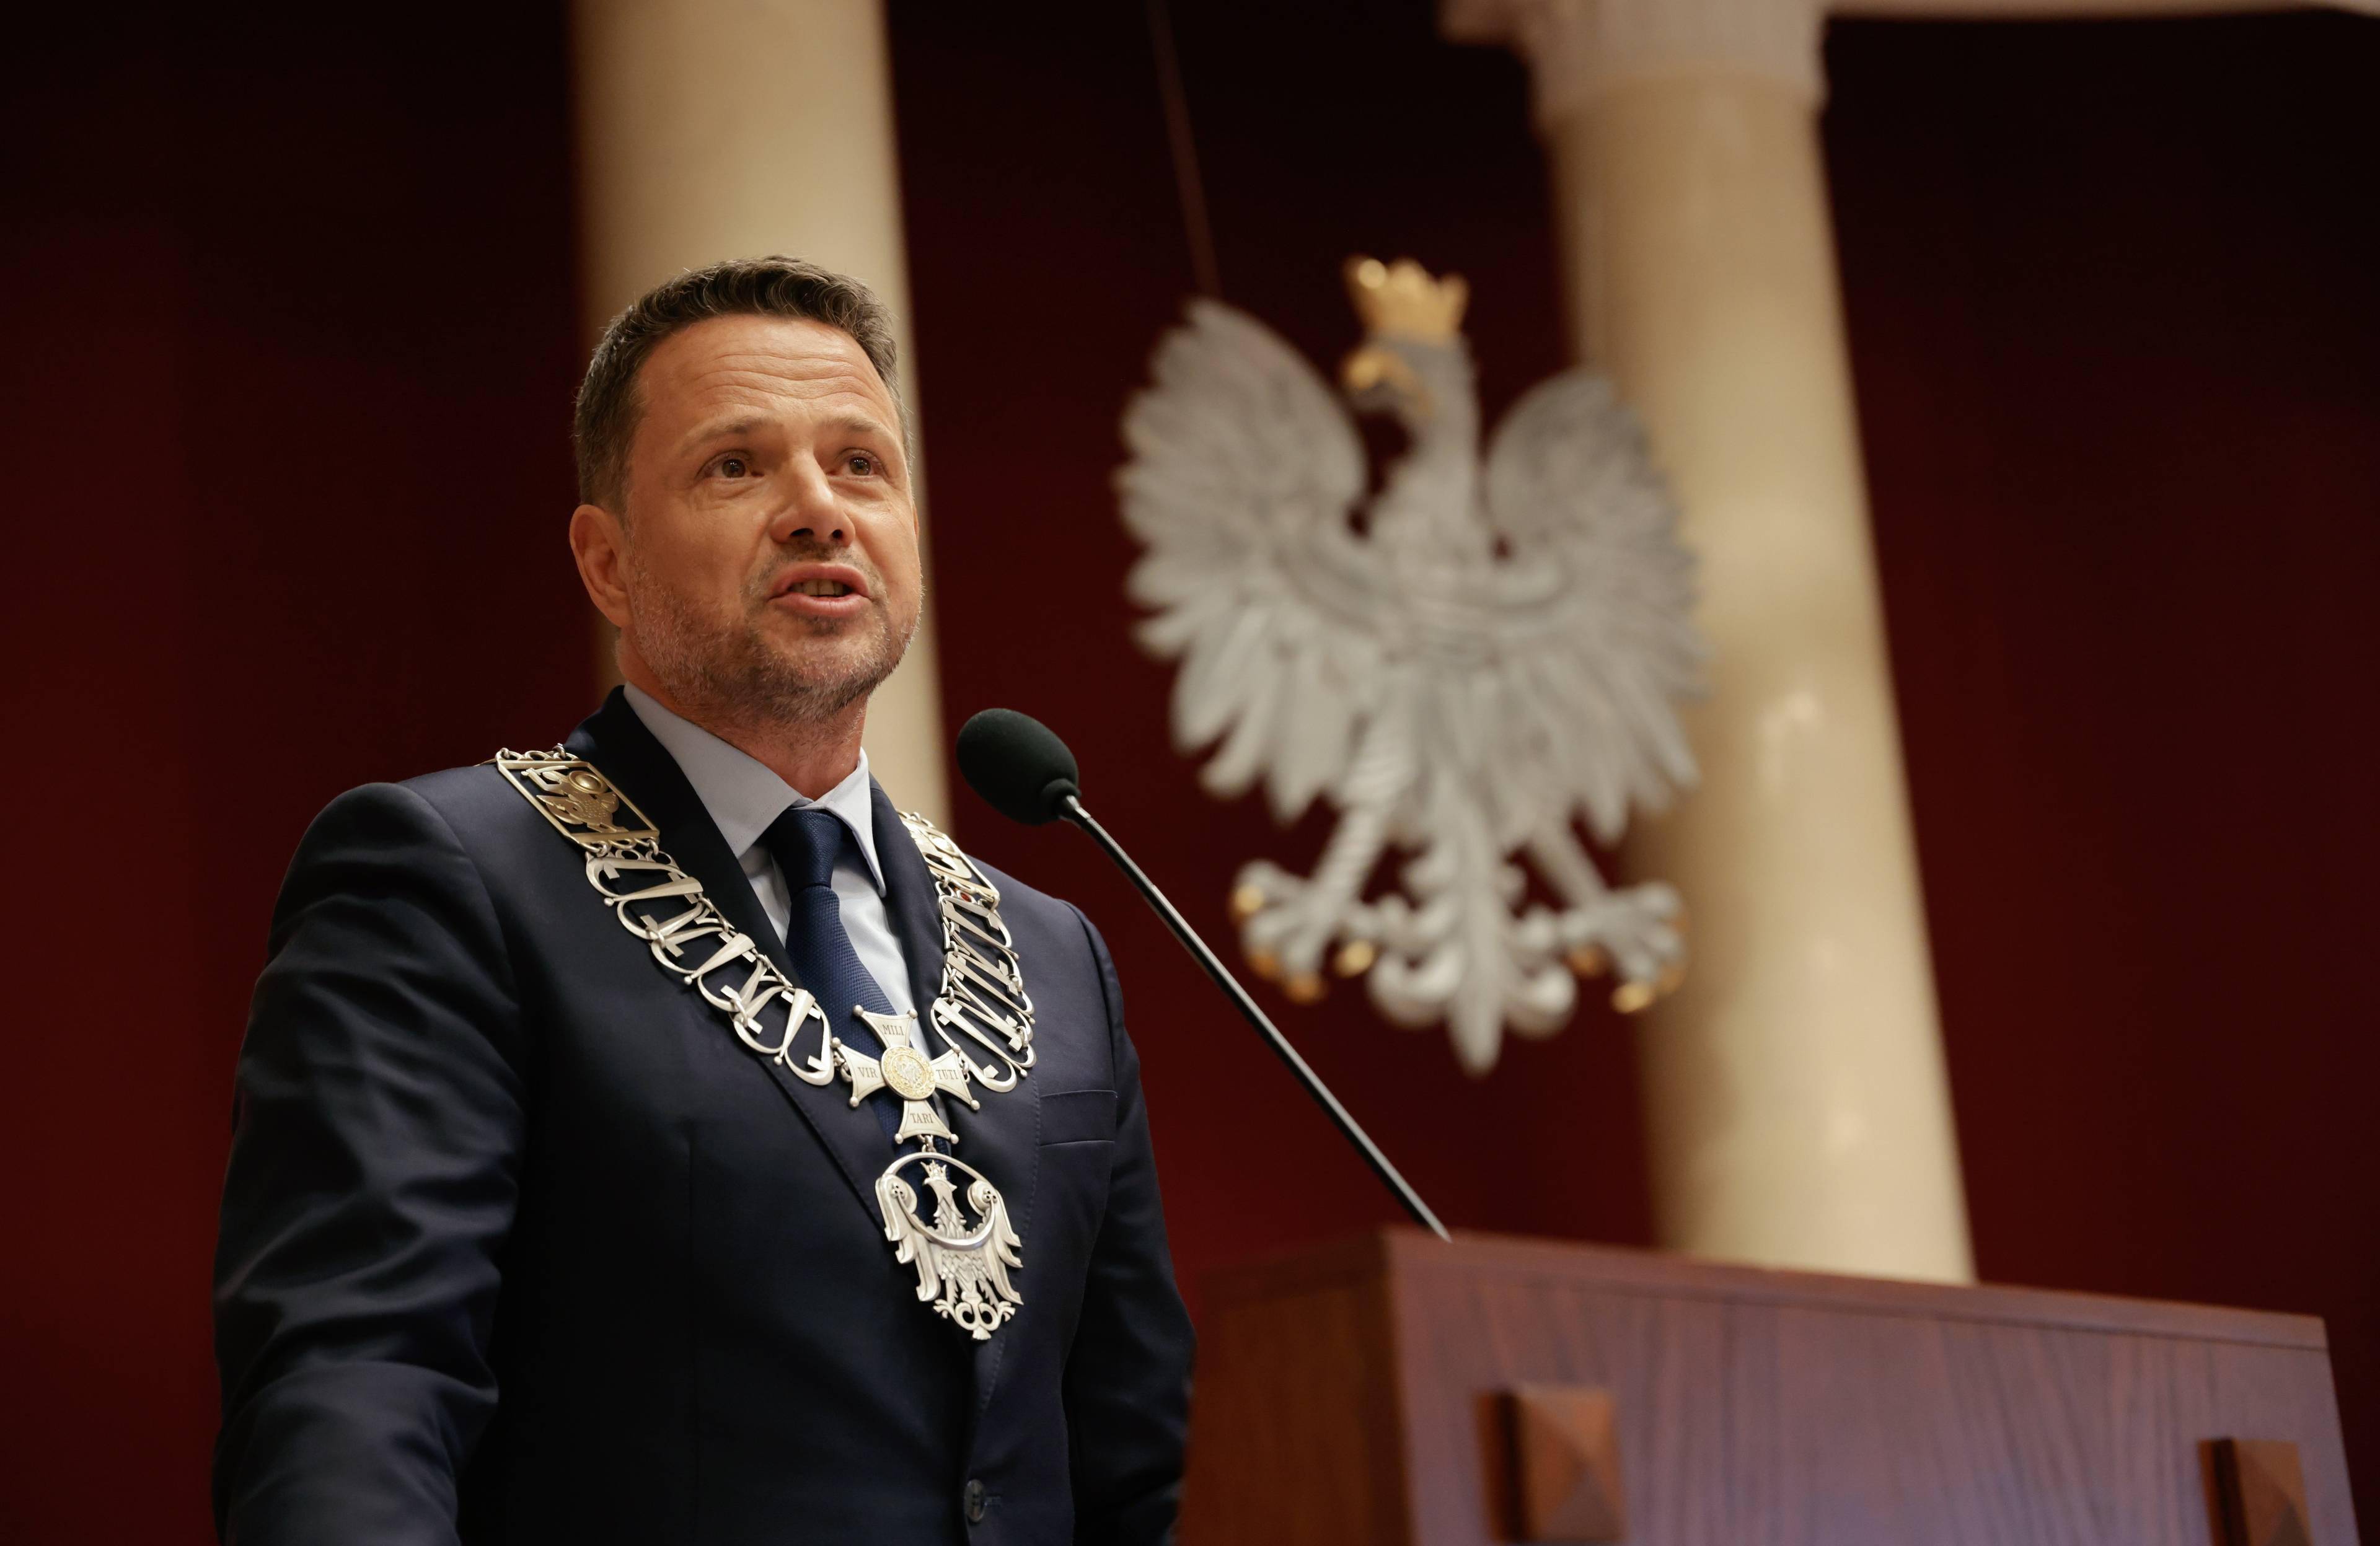 Prezydent Warszawy Rafał Trzaskowski